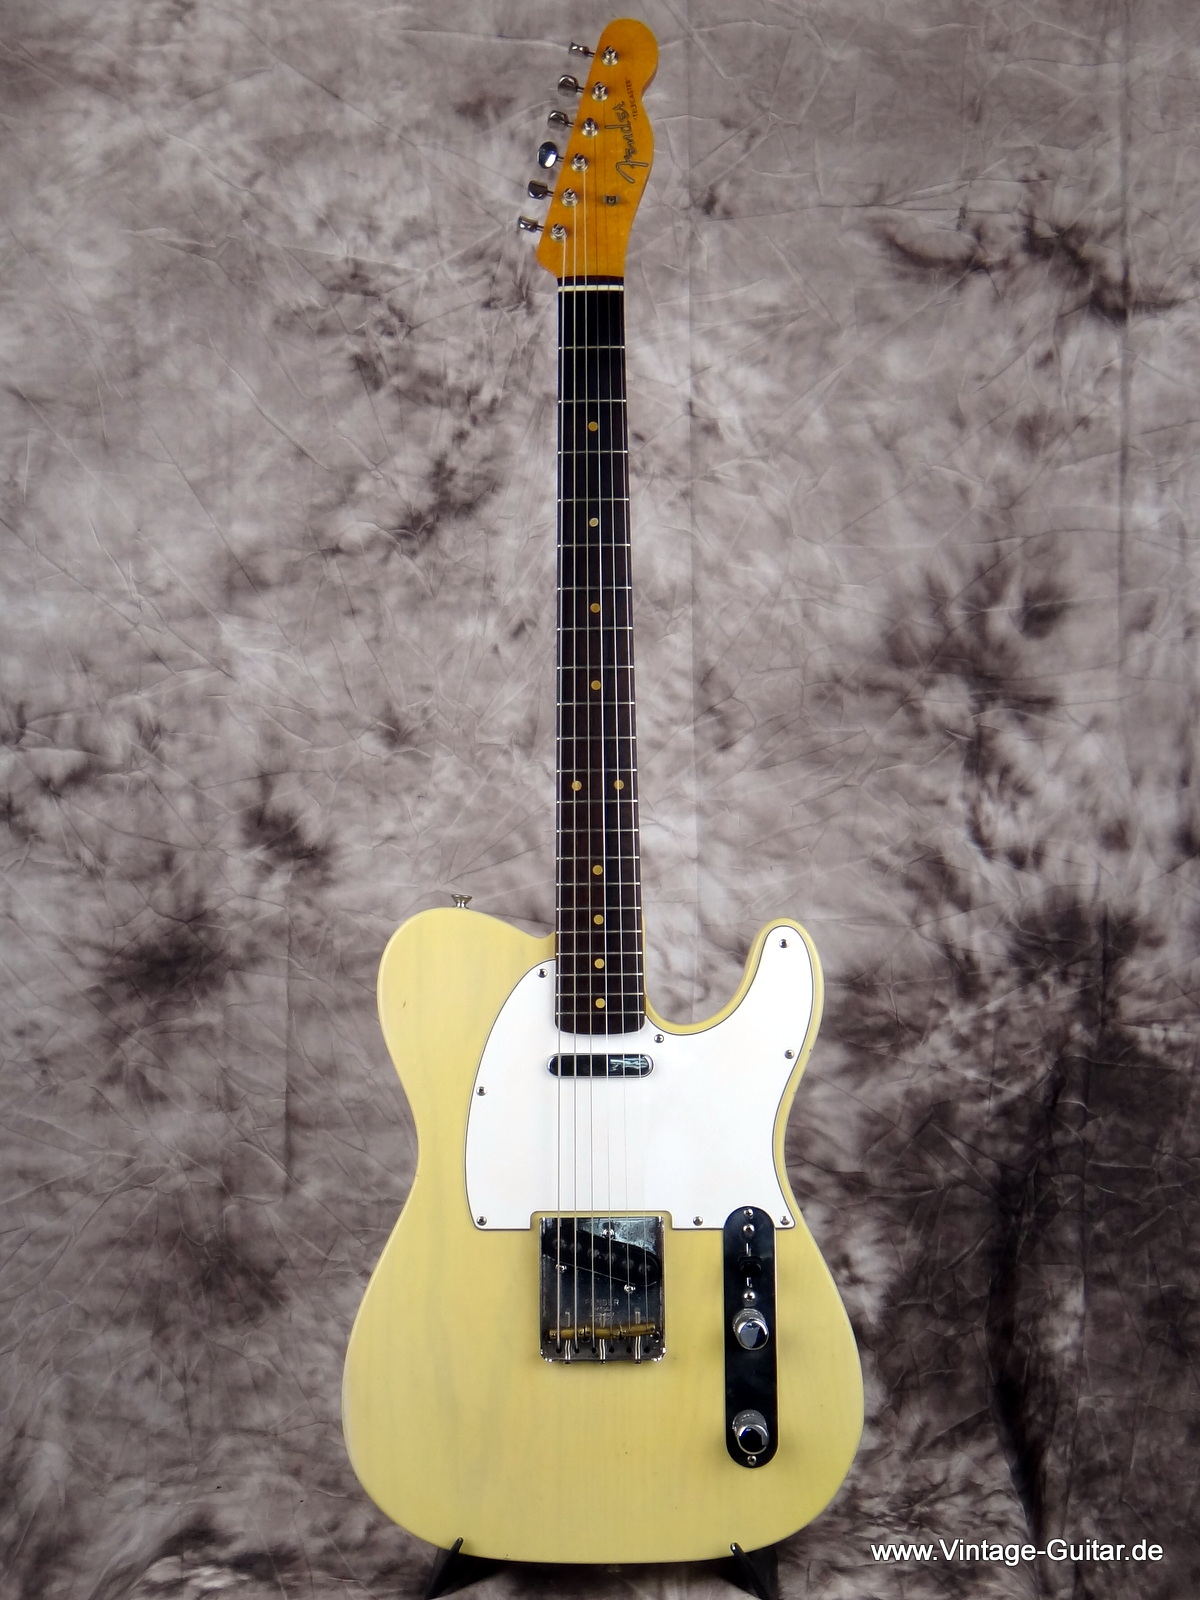 Fender_Telecaster_1966-Jazzmaster-neck-1959-001.JPG